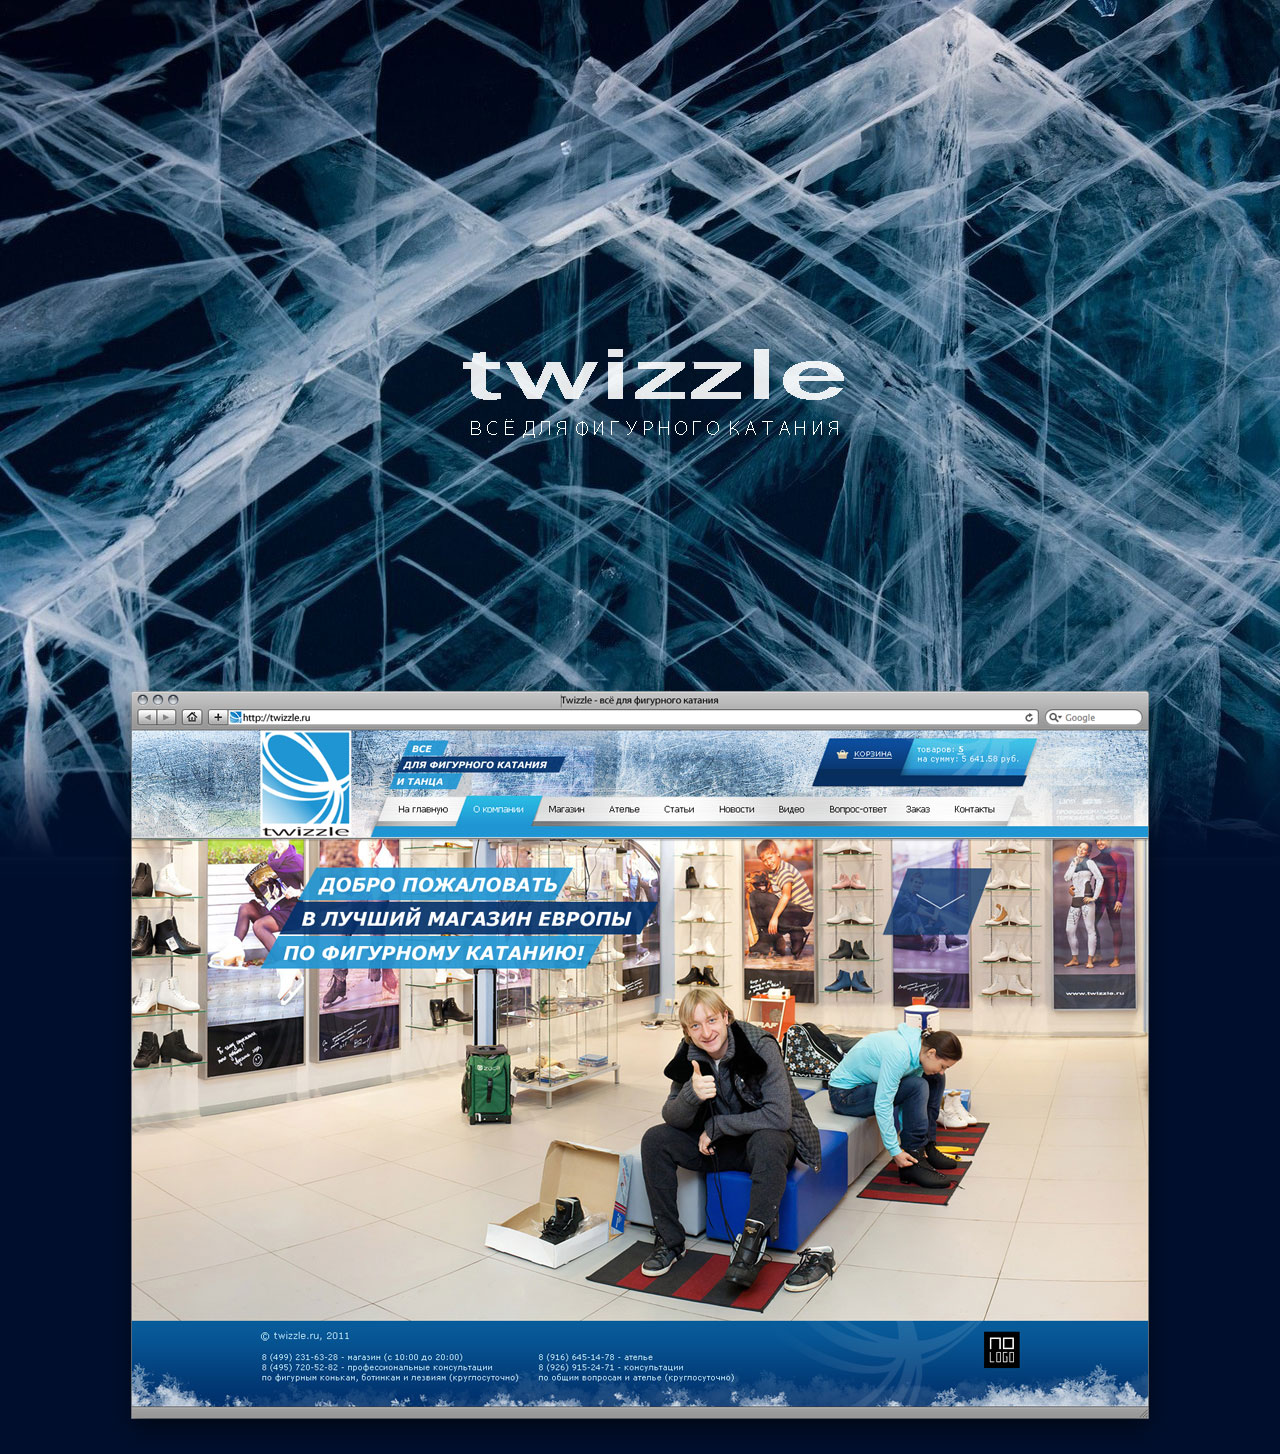 Twizzle
Аналитика / Дизайн / Фронтенд-программирование / Бэкенд-программирование
© No Logo Studio